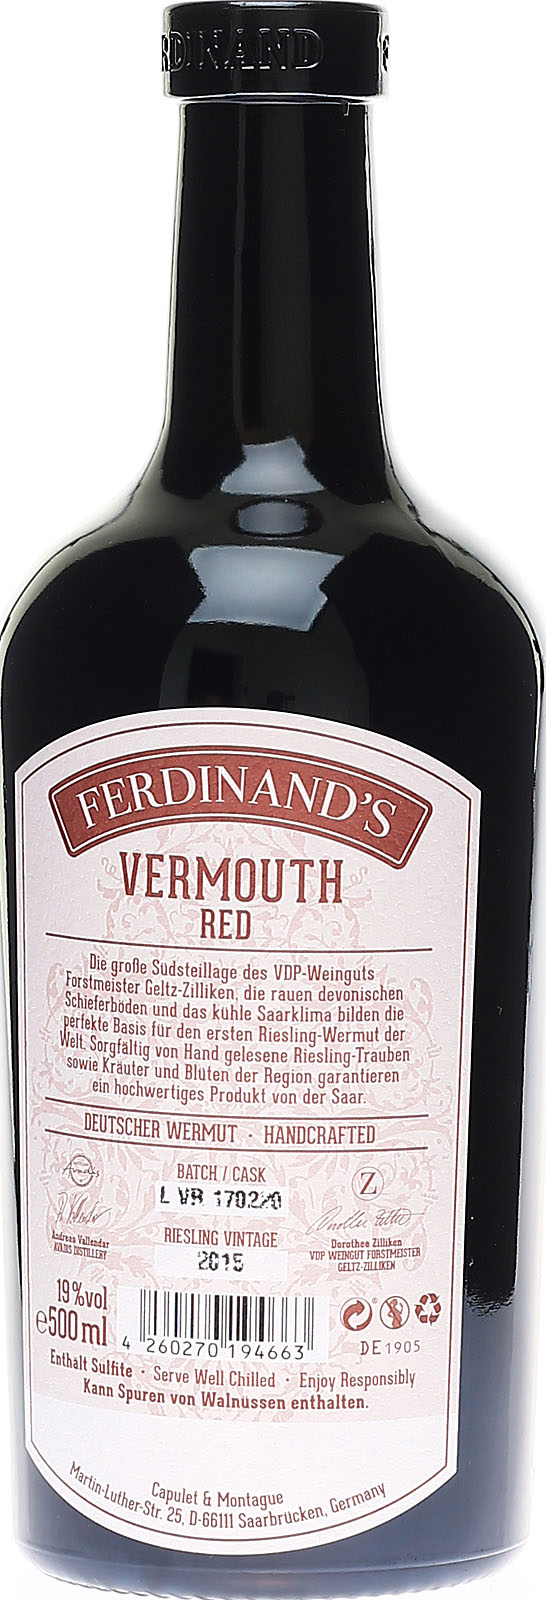 aus Ferdinand\'s Wermut hochwertiger Deuts Red Vermouth,